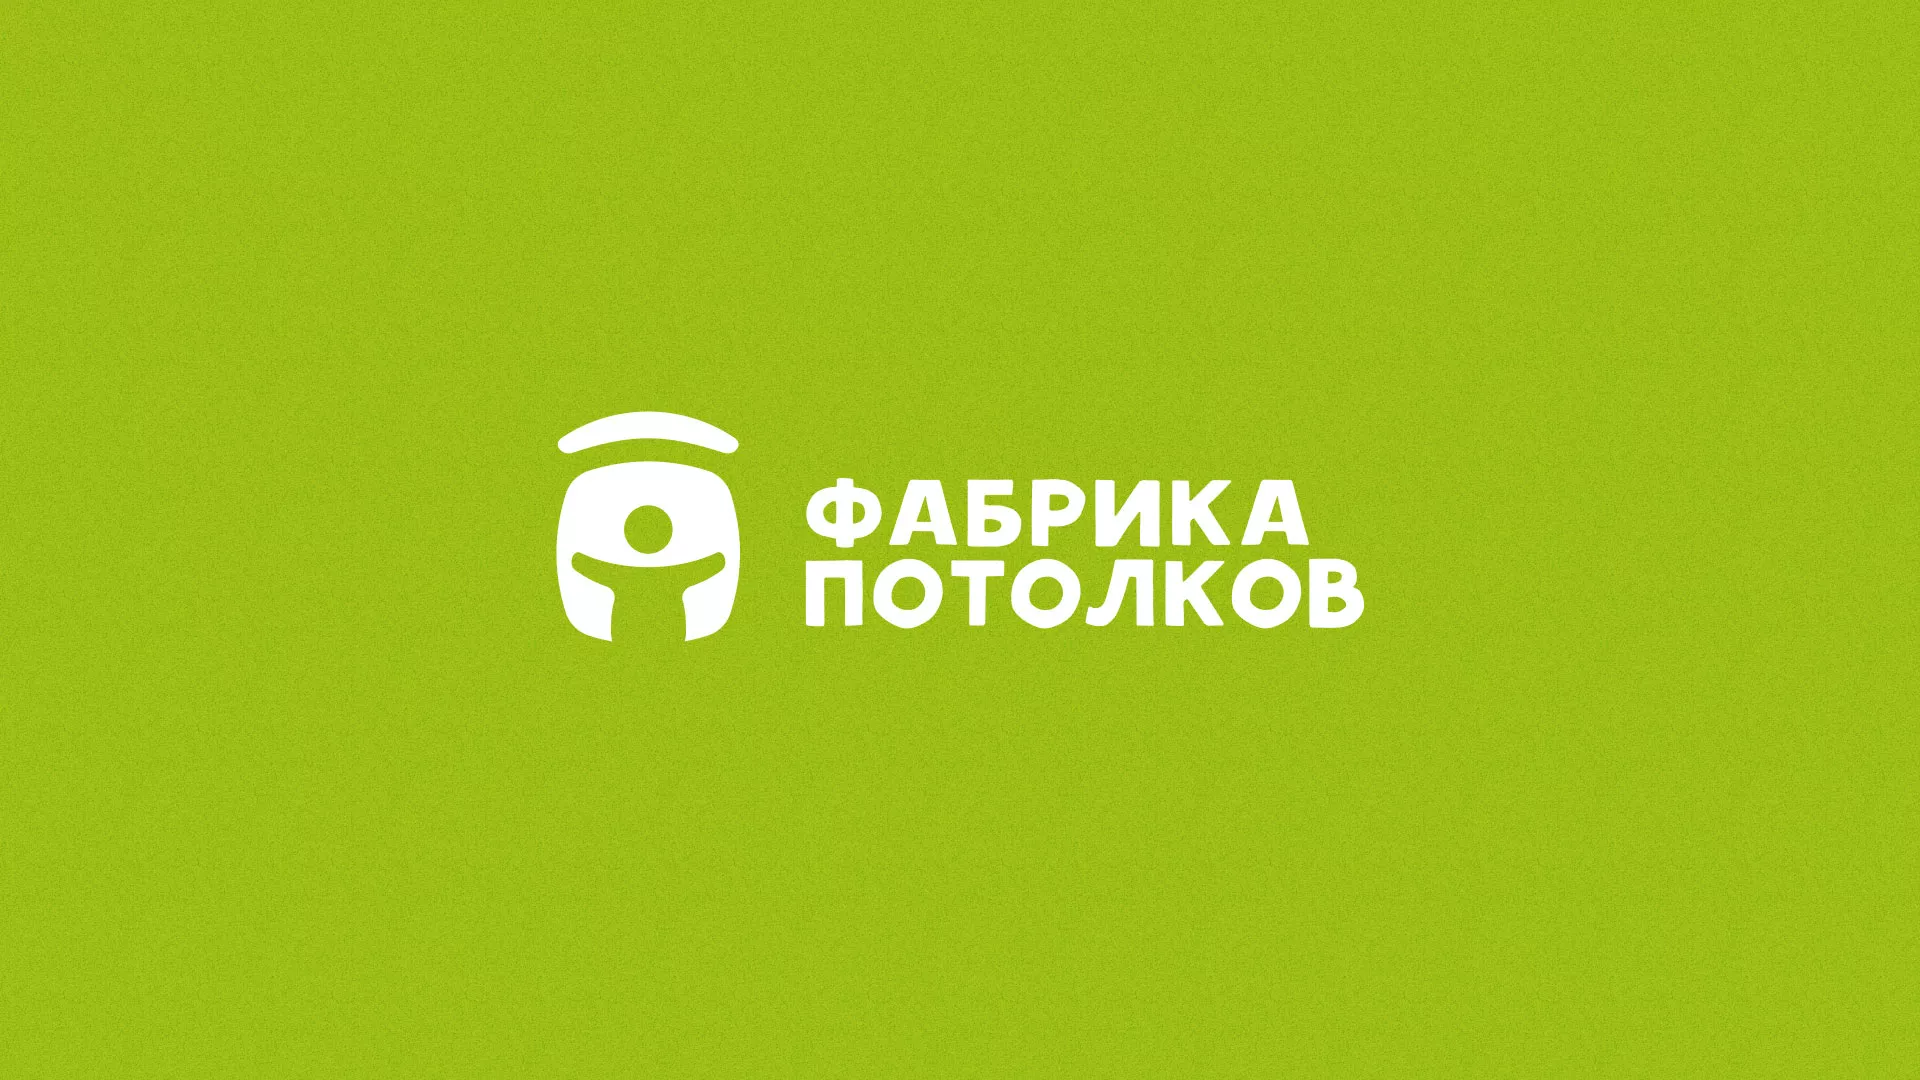 Разработка логотипа для производства натяжных потолков в Гдове